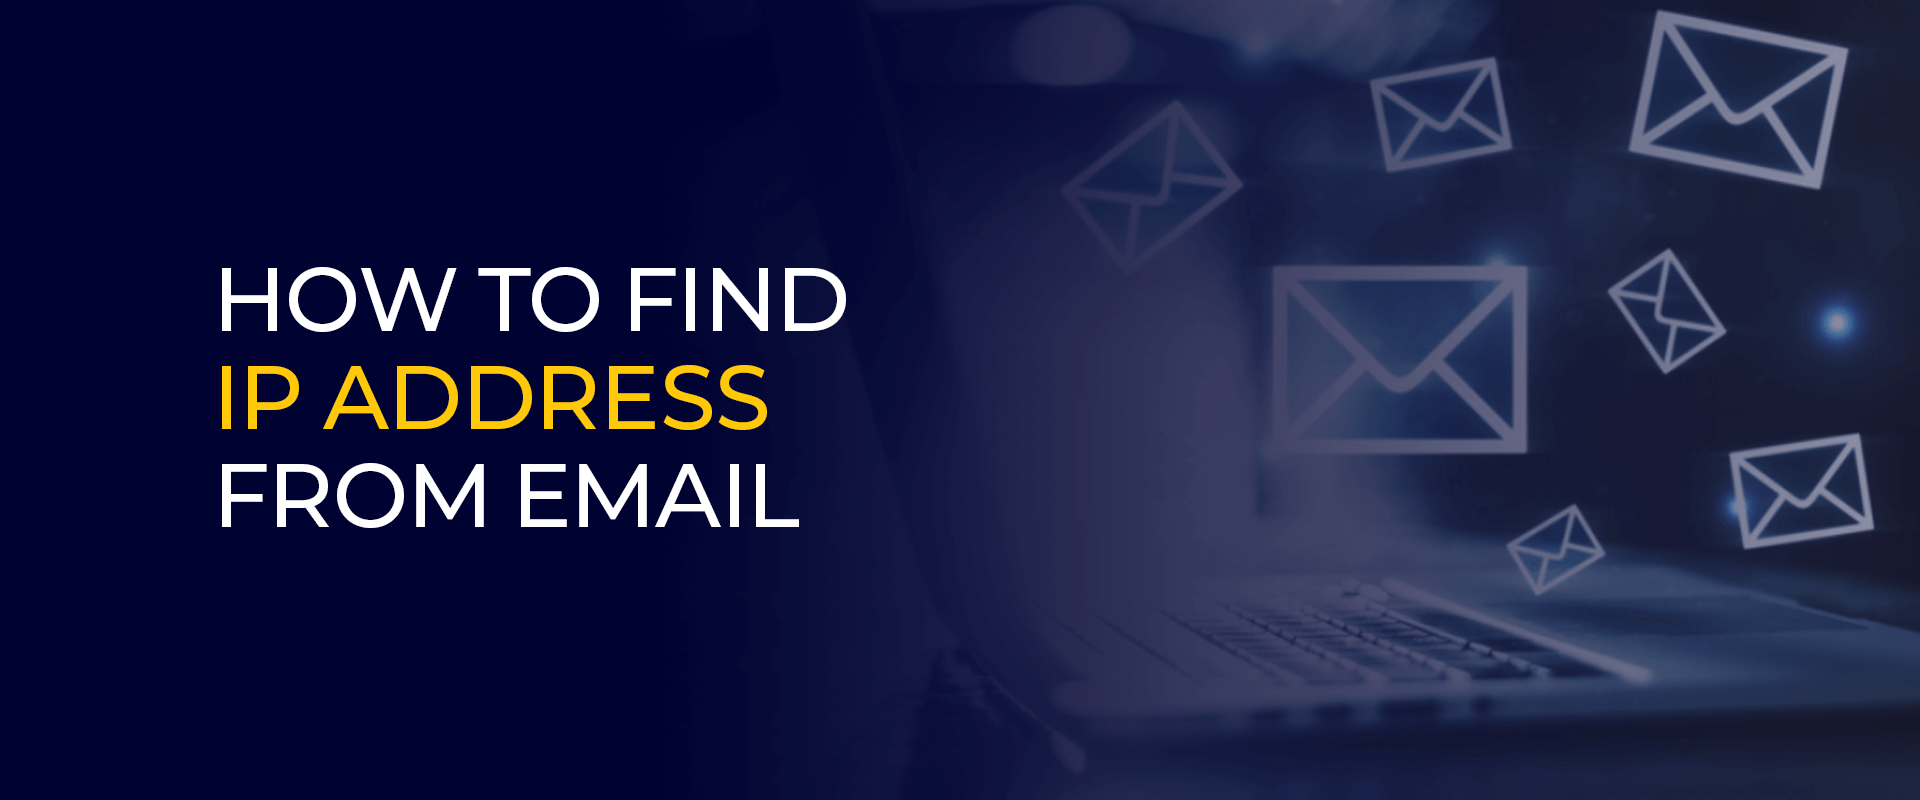 メールからIPアドレスを調べる方法